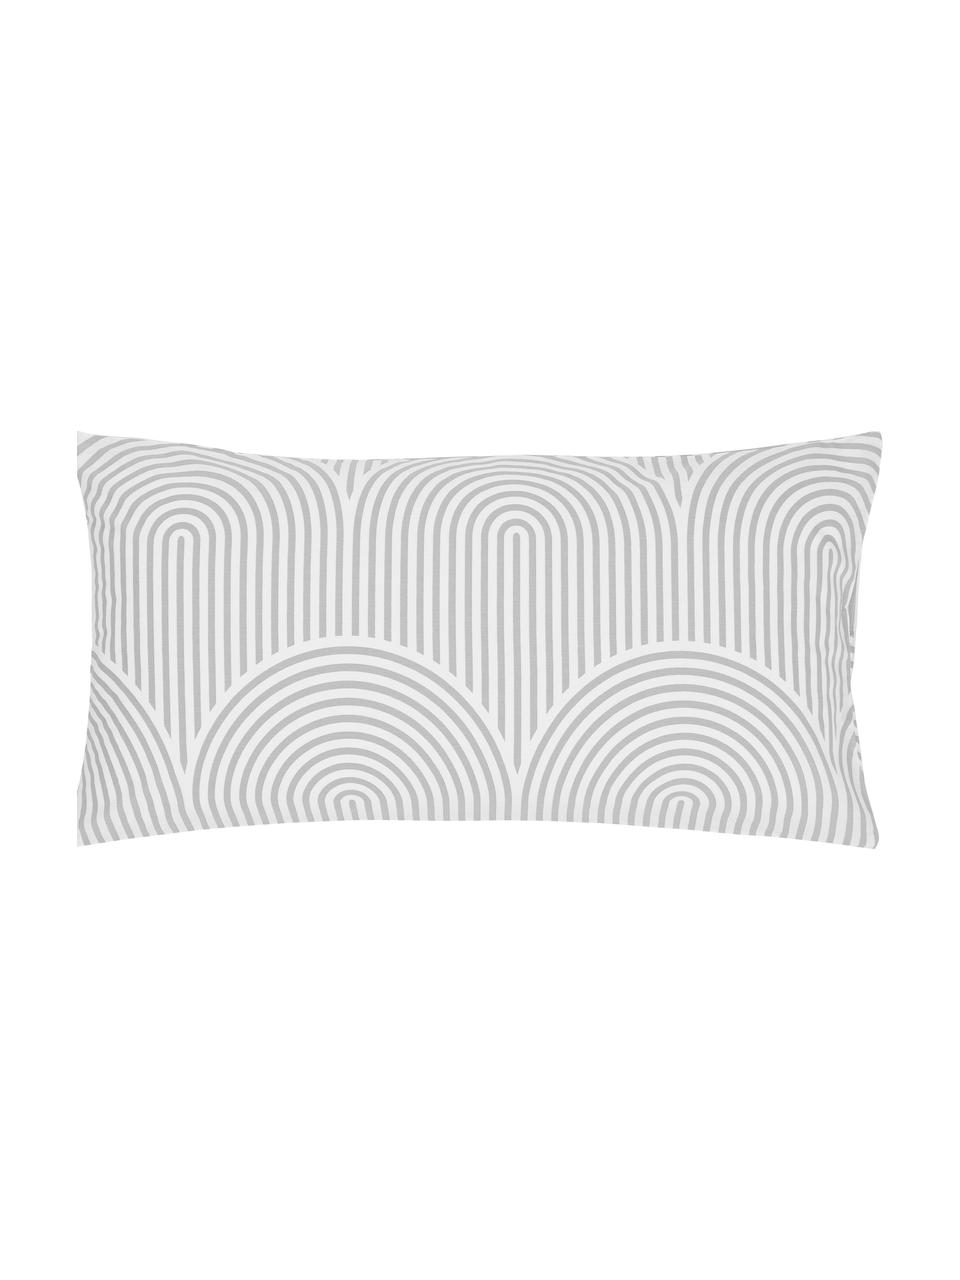 Poszewka na poduszkę z bawełny Arcs, 2 szt., Szary, S 40 x D 80 cm